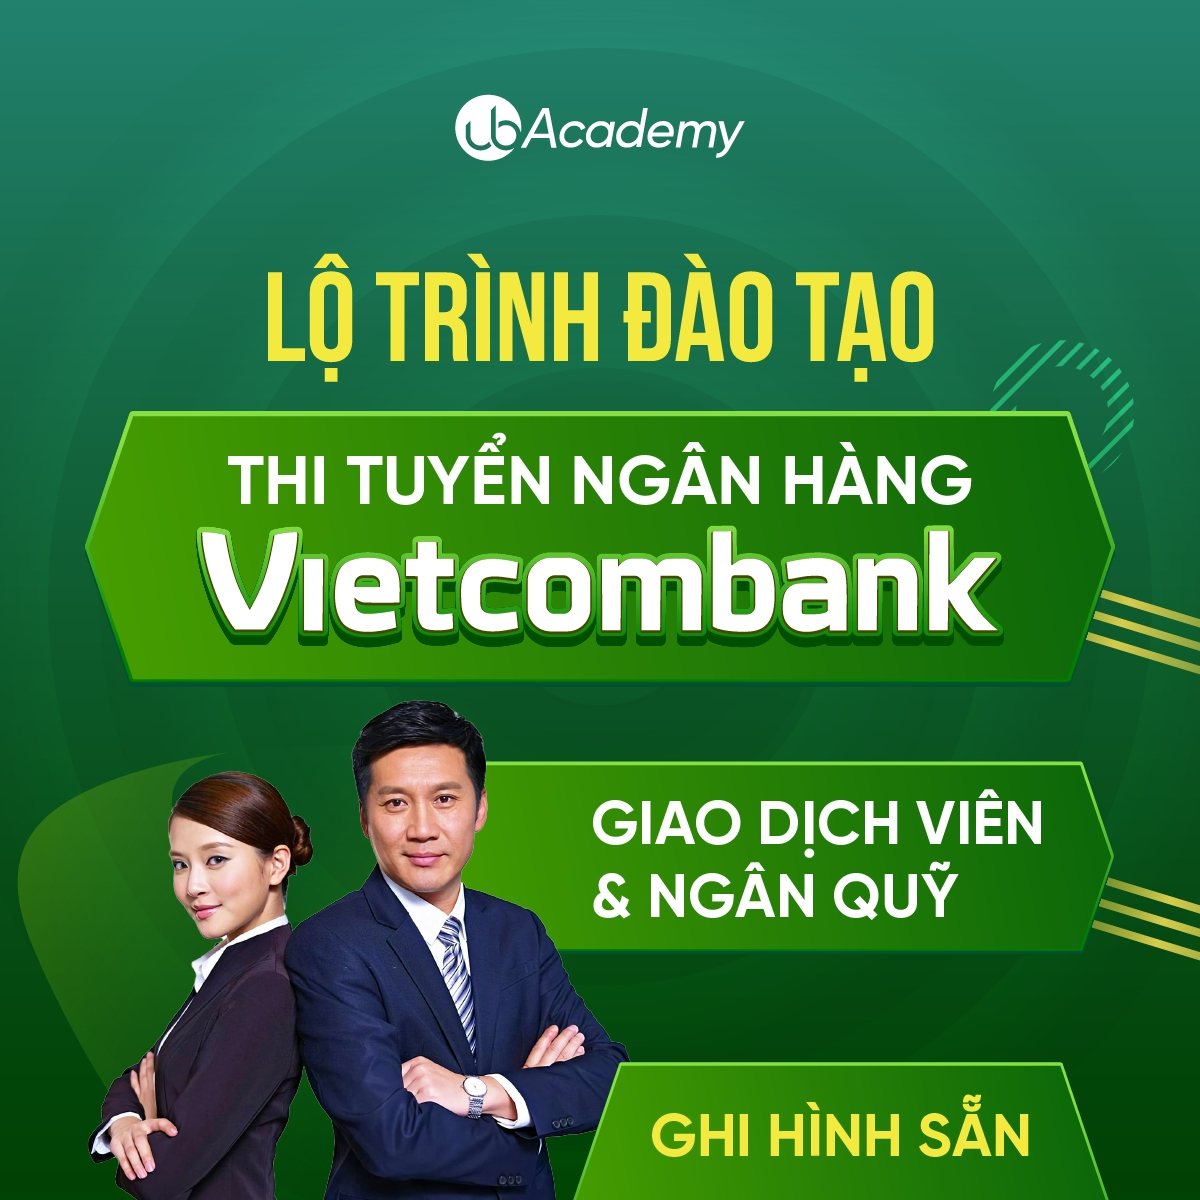 Lộ trình đào tạo thi tuyển Ngân hàng Vietcombank - Vị trí Giao dịch viên & Ngân quỹ - Ghi hình sẵn